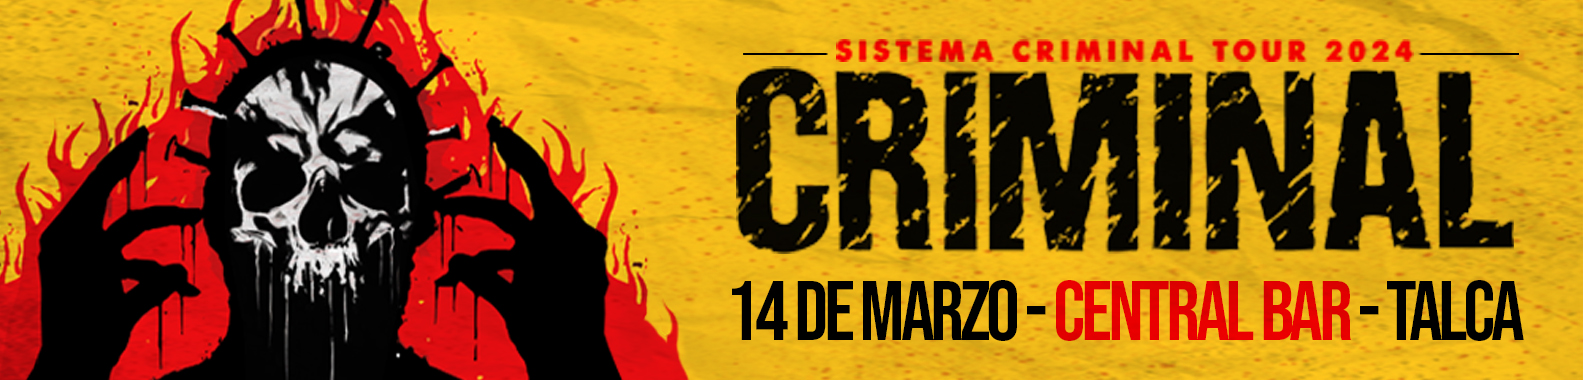 SISTEMA CRIMINAL TOUR 2024